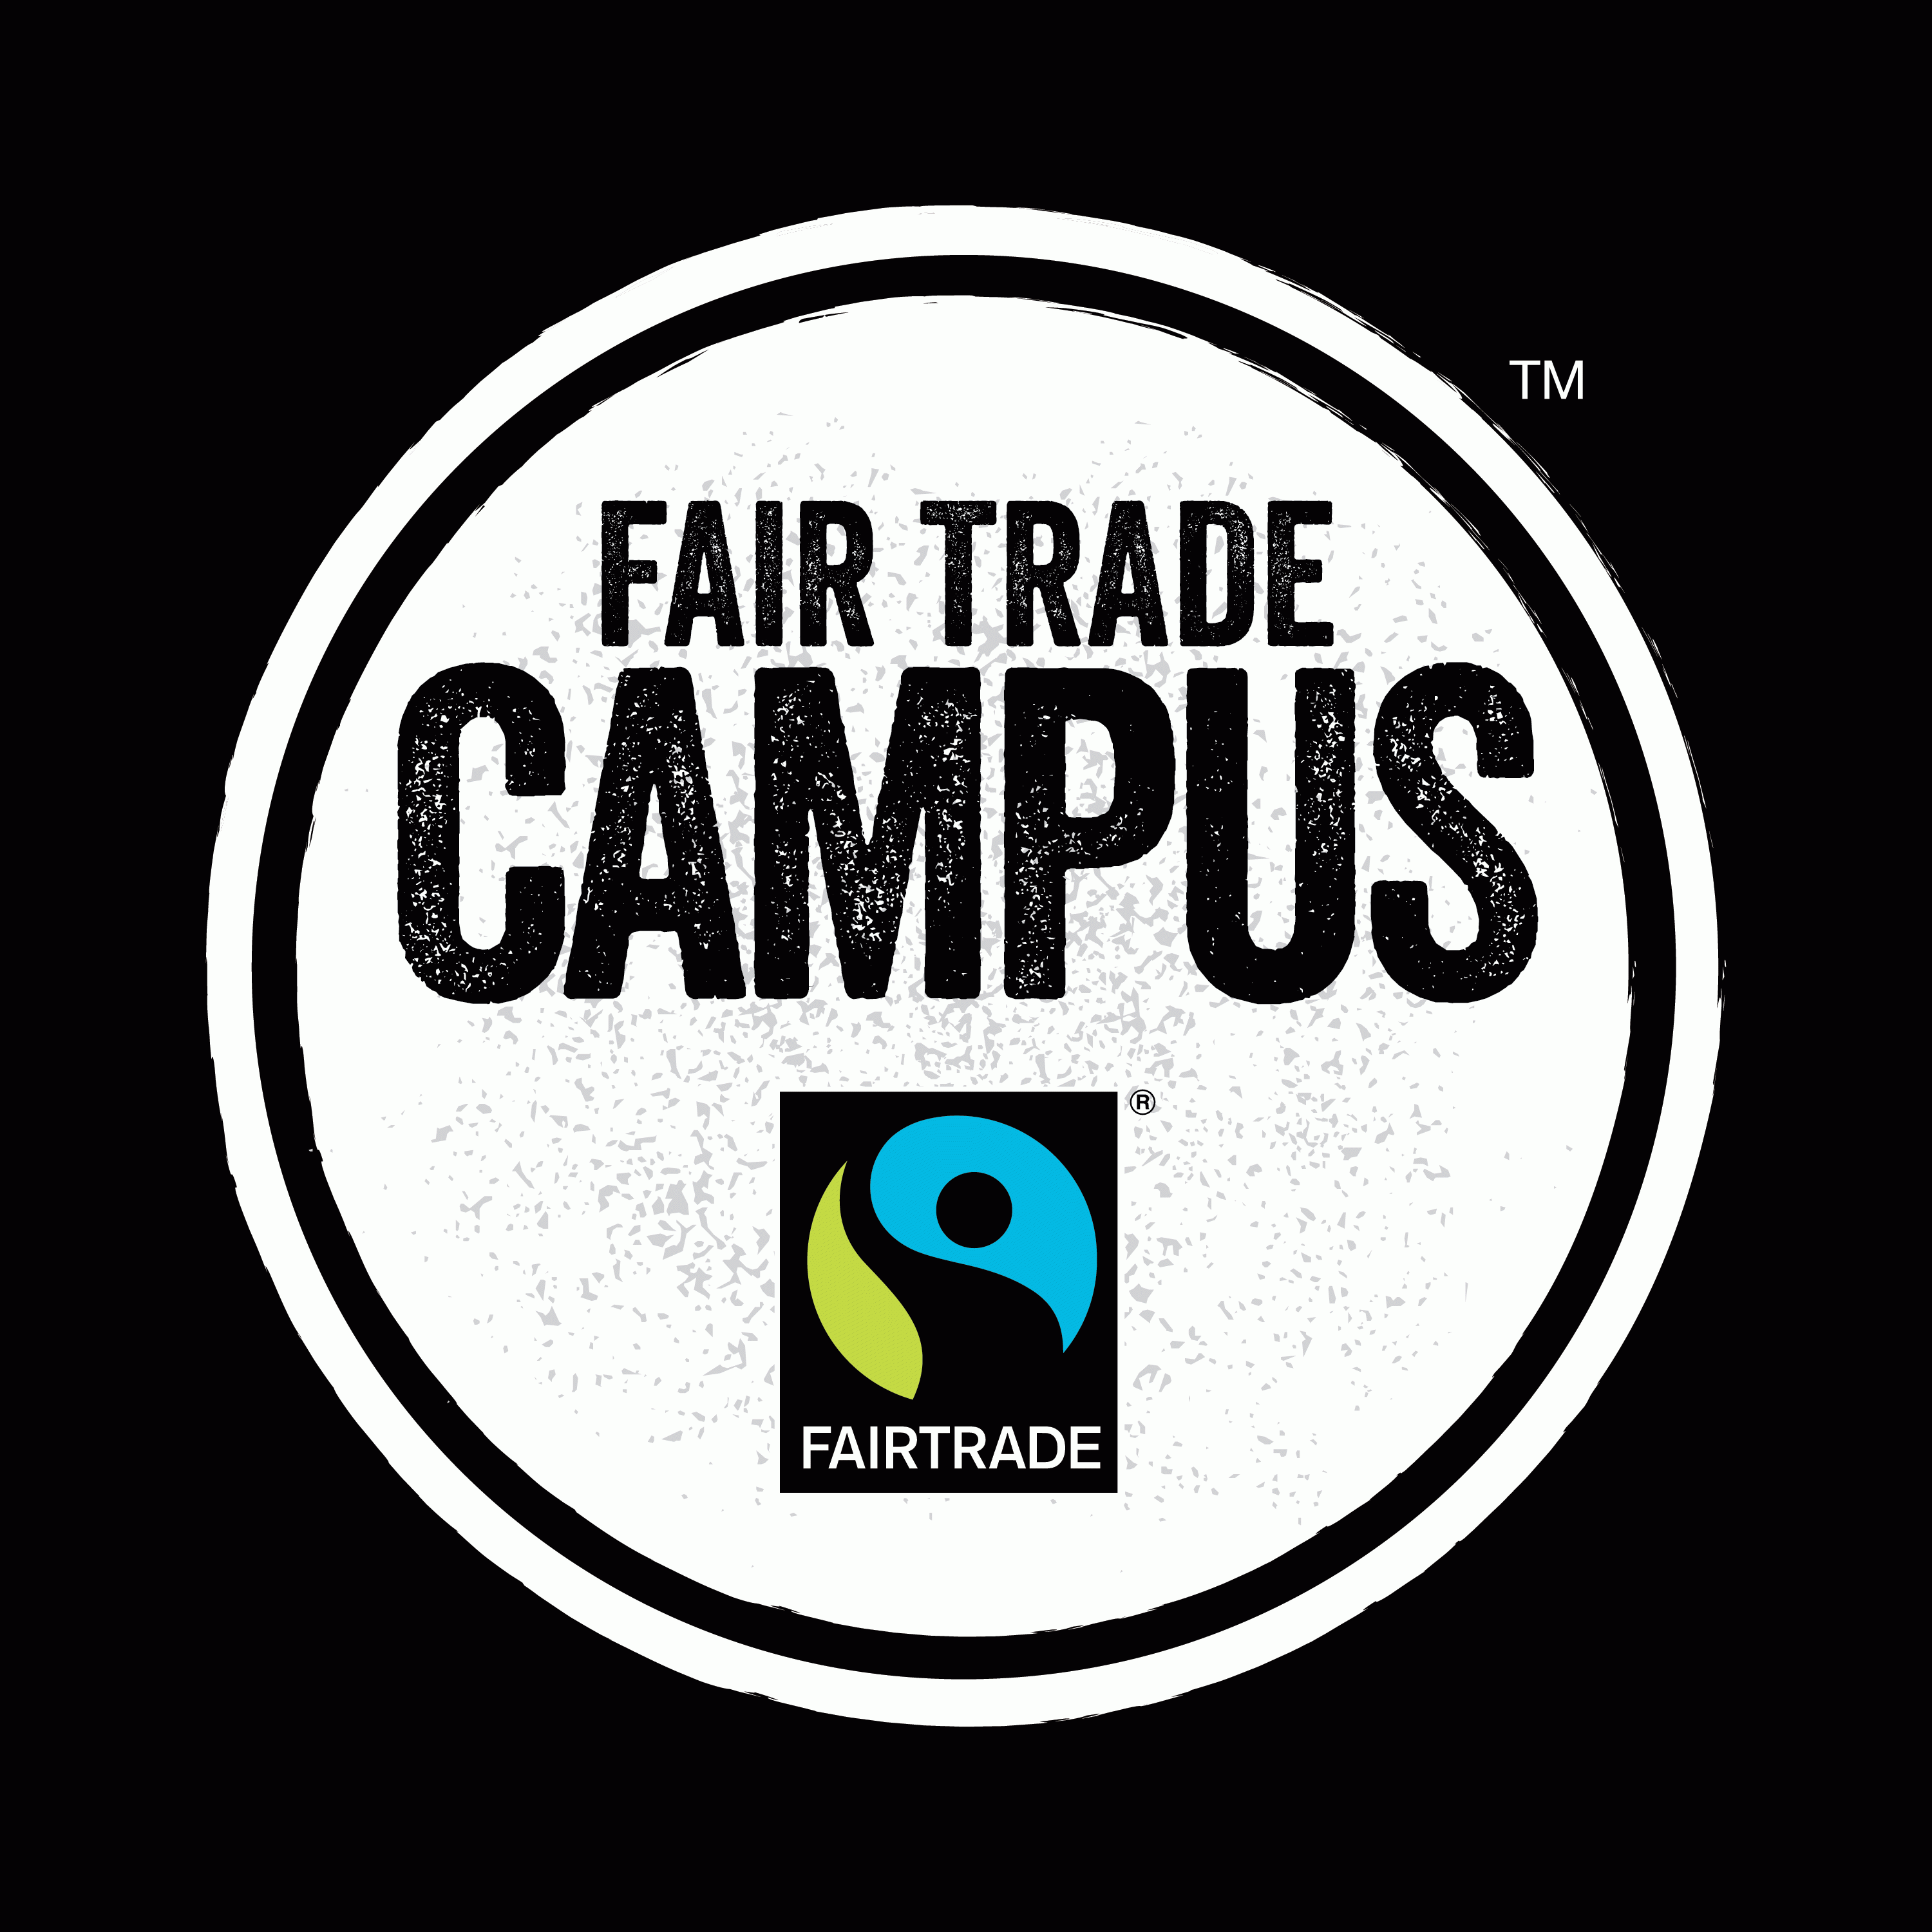 (image: Fairtrade Logo)